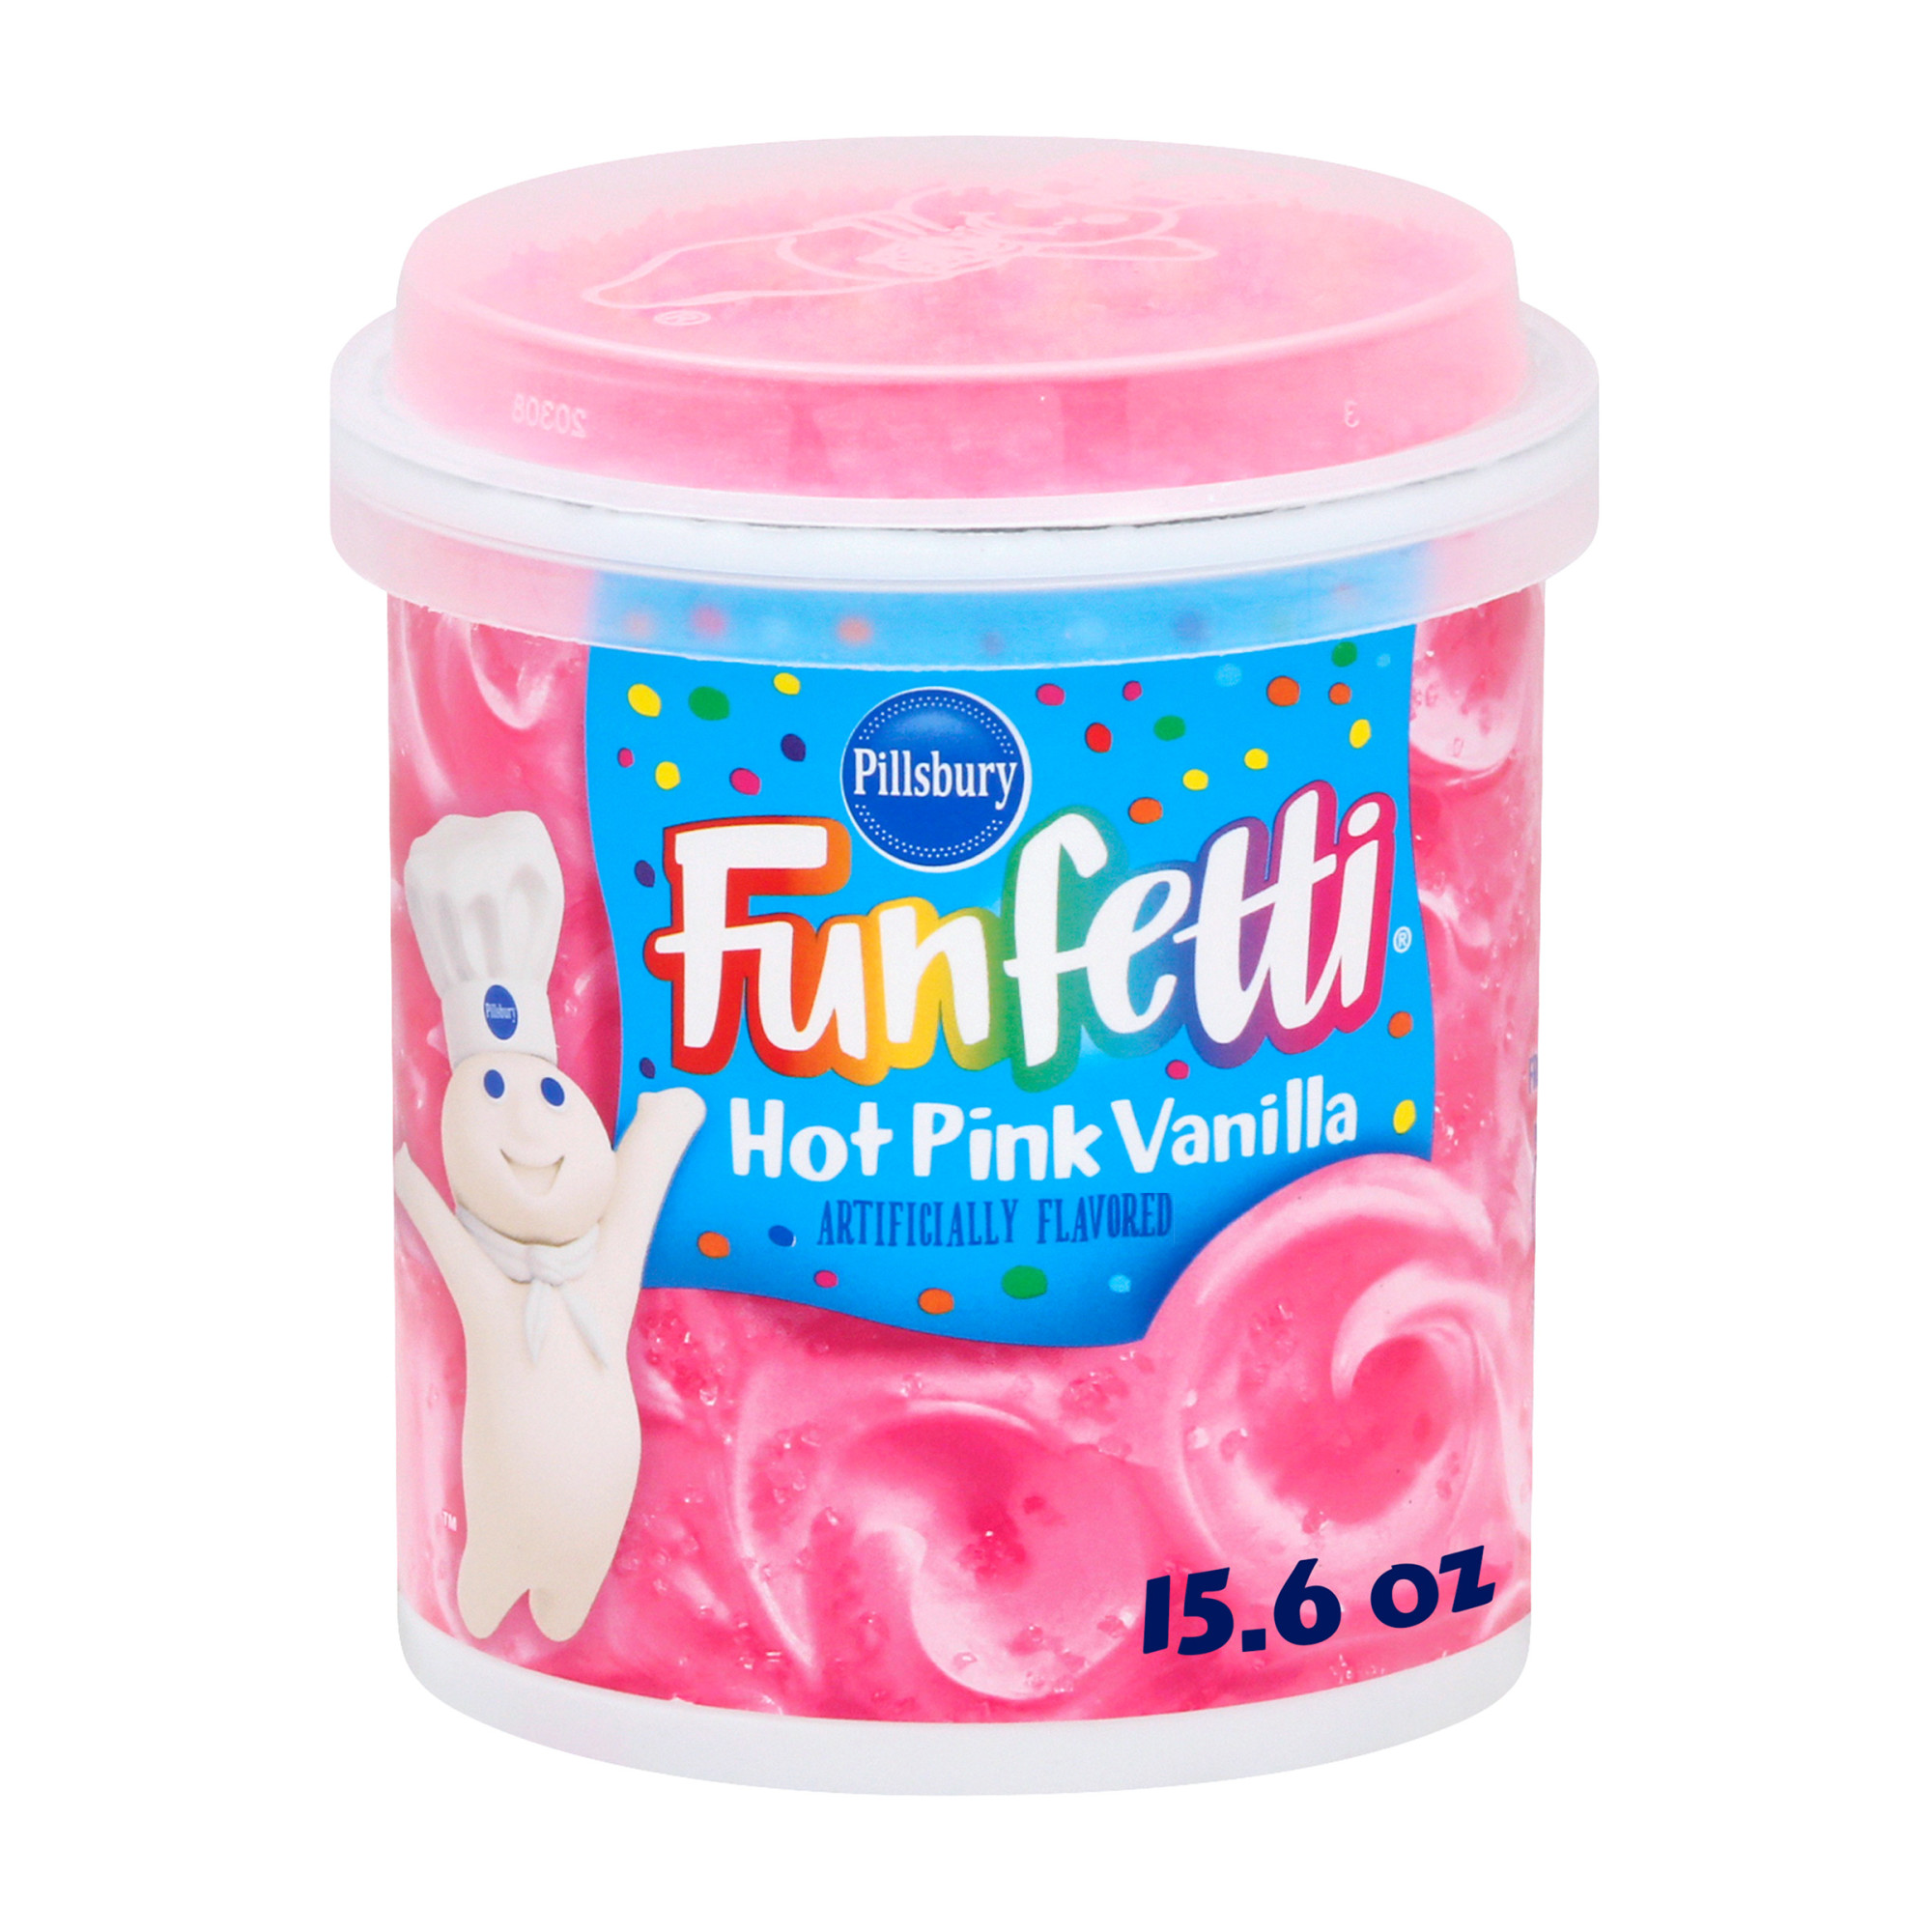 Pillsbury Funfetti Hot Pink Vanilla Frosting, 15.6 Oz Tub - image 1 of 7